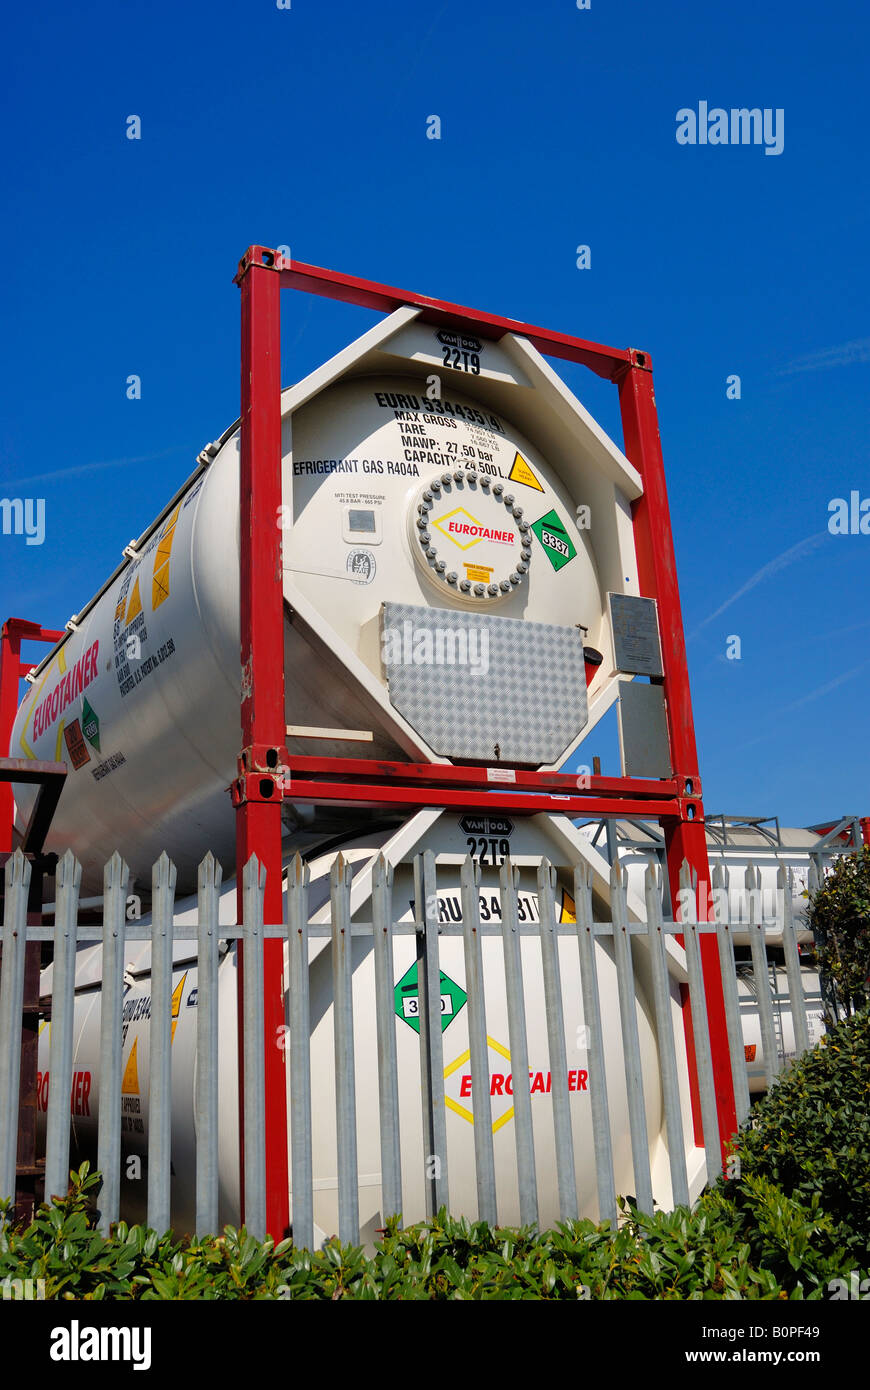 Eurotainer Gas Storage-Container für den Transport geschützt Stockfoto